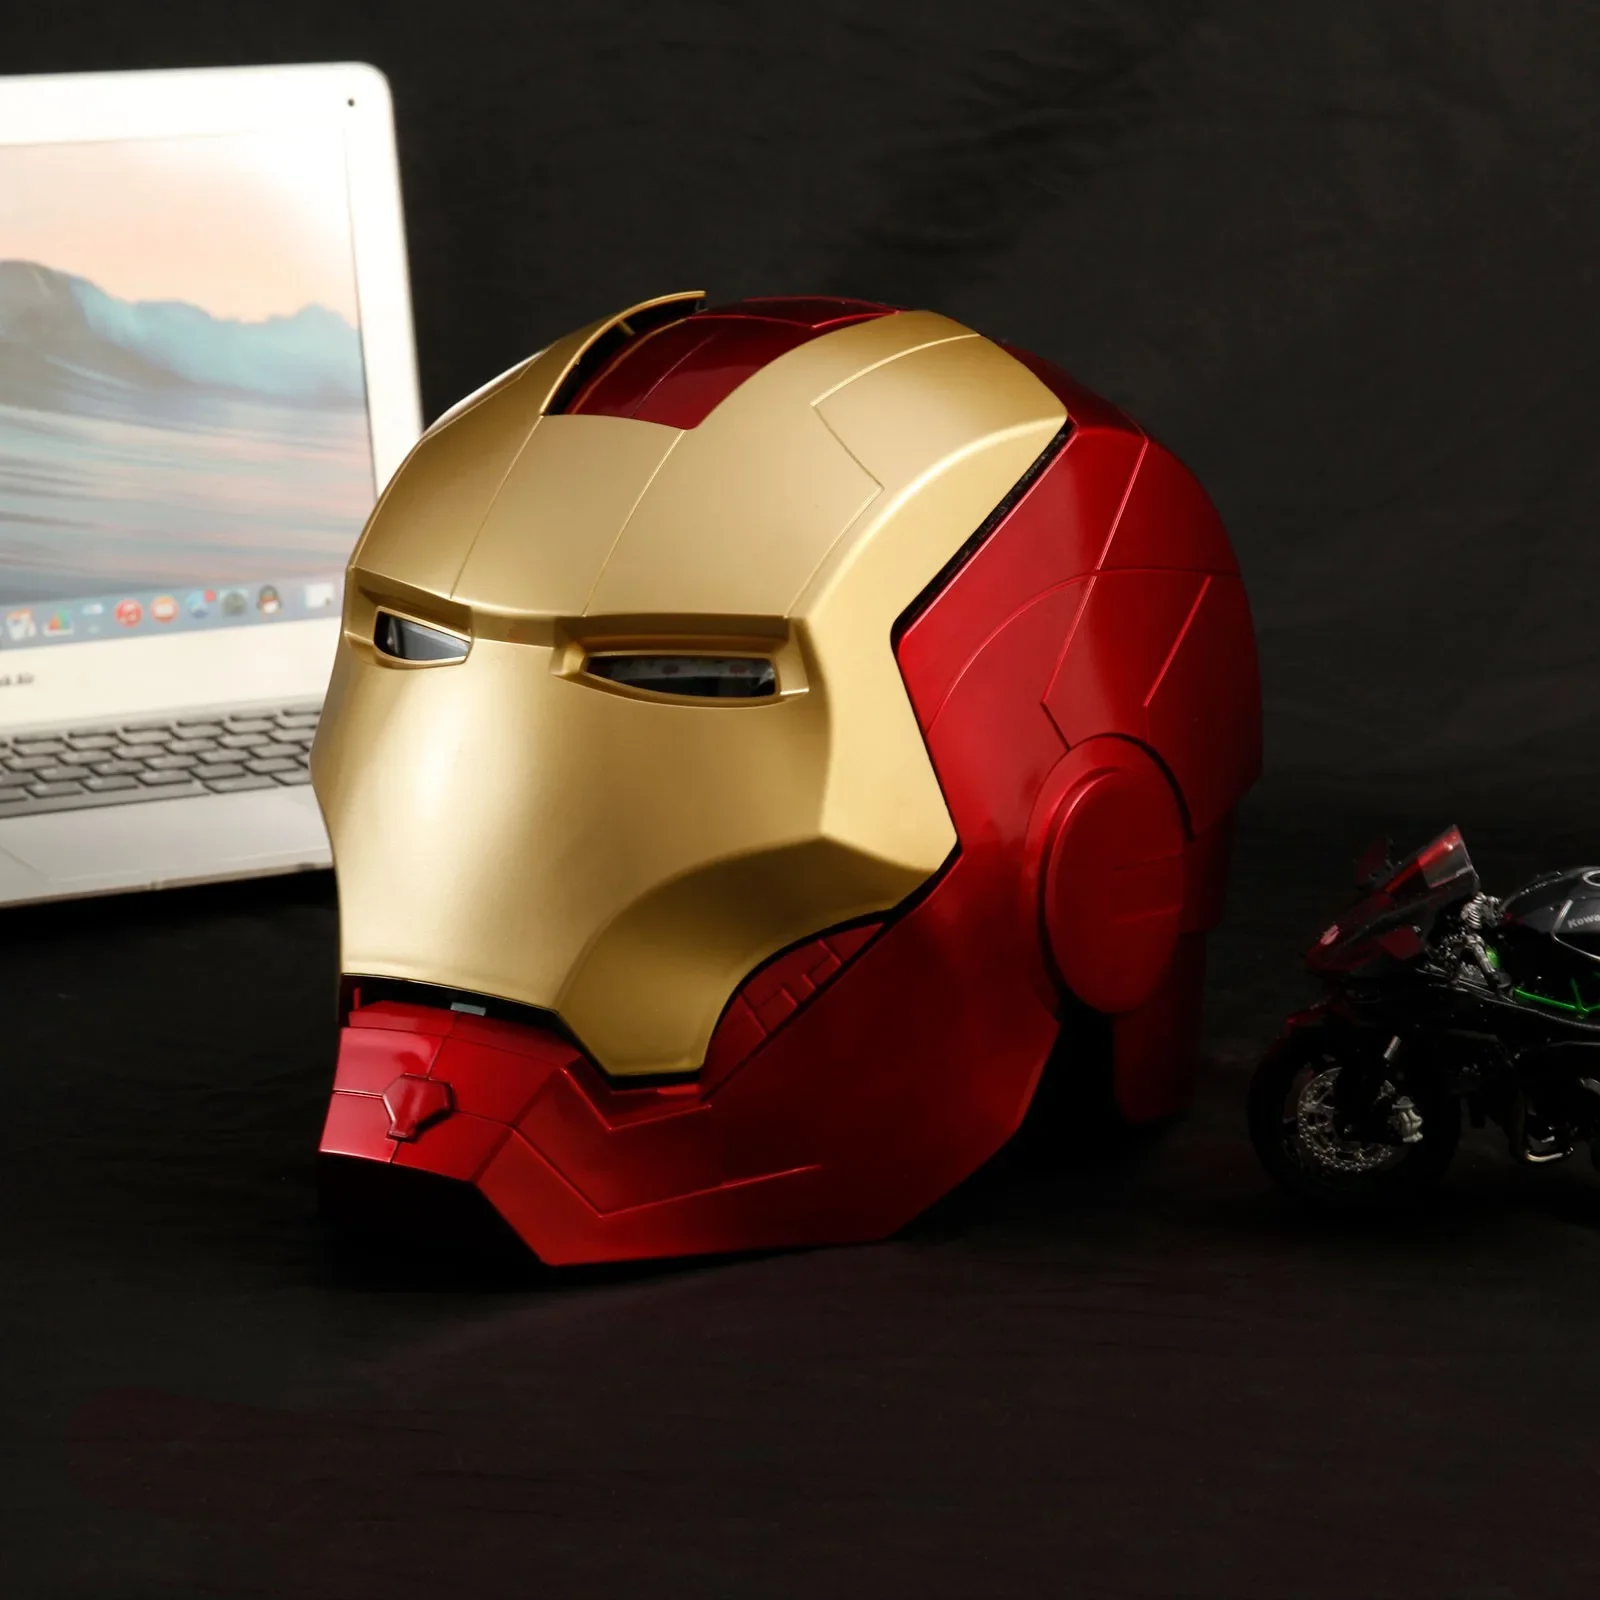 

Cosplay 1:1 Новинка Marvel Мстители Железный человек Шлем фото Светодиодная лампа из ПВХ экшн-фигурка игрушки подарок для детей и взрослых